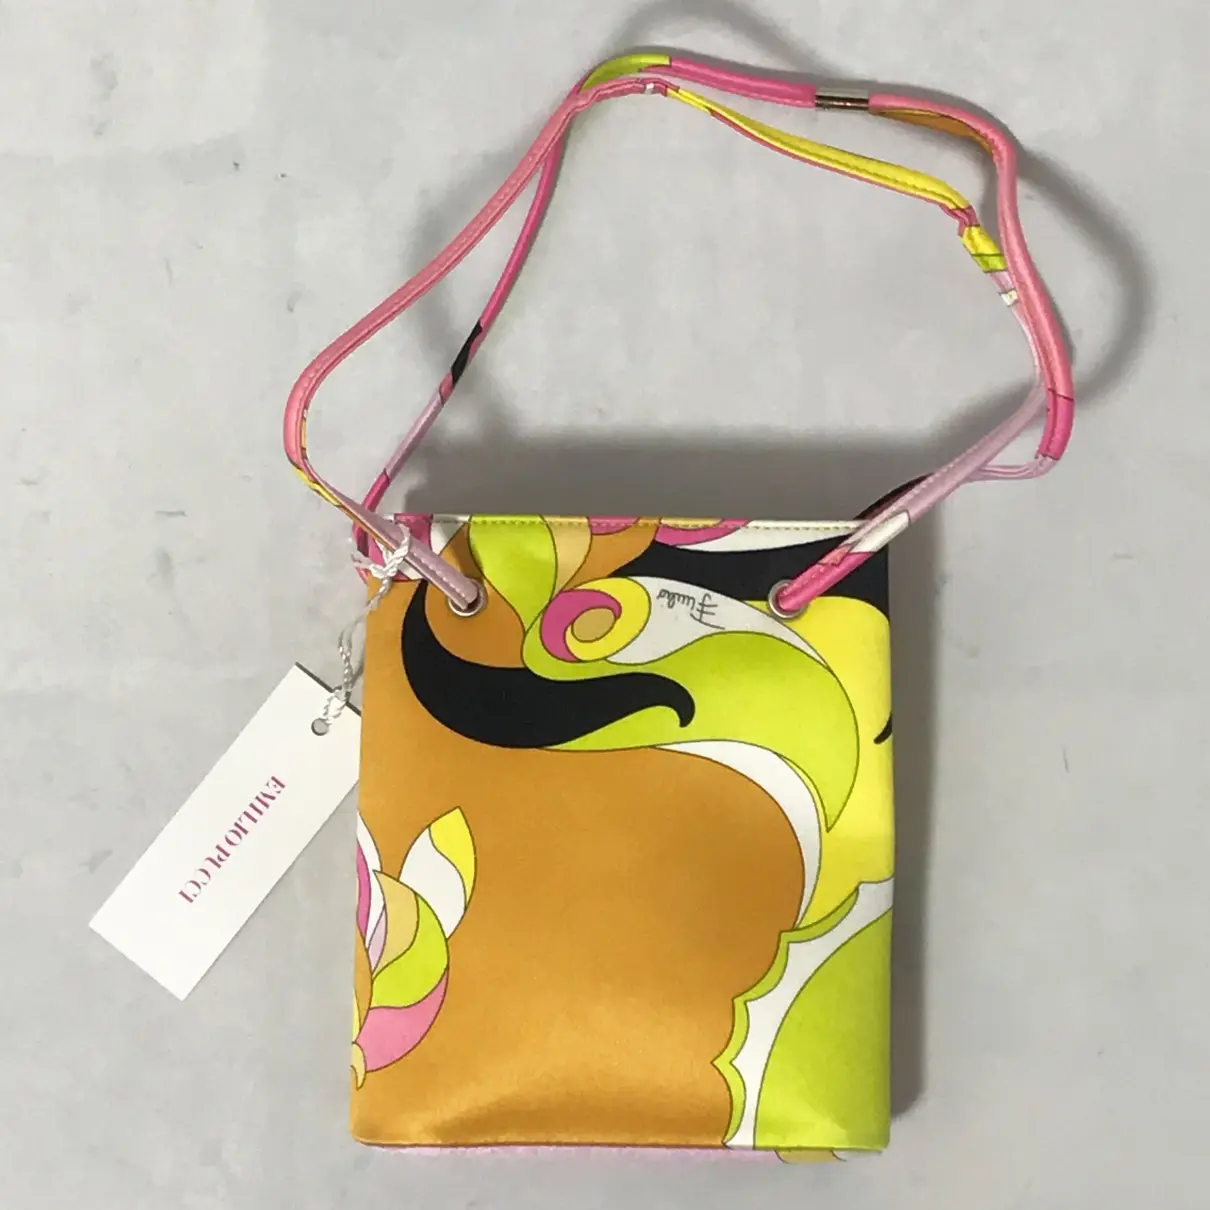 Buy Emilio Pucci Silk handbag online